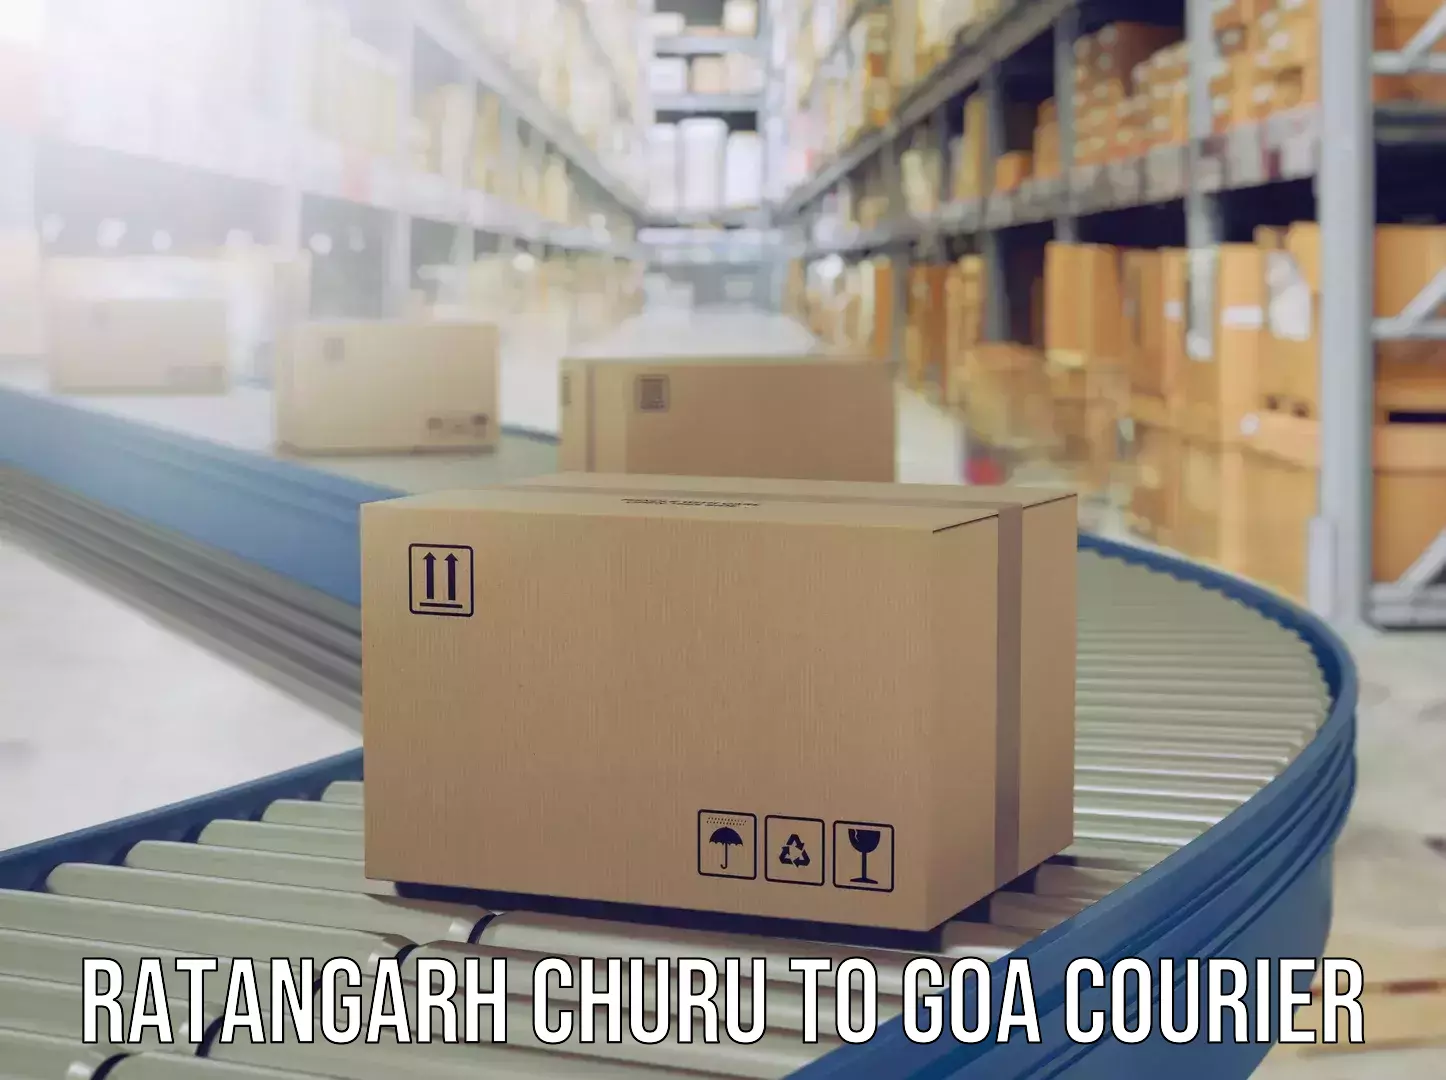 Versatile luggage courier Ratangarh Churu to Panjim